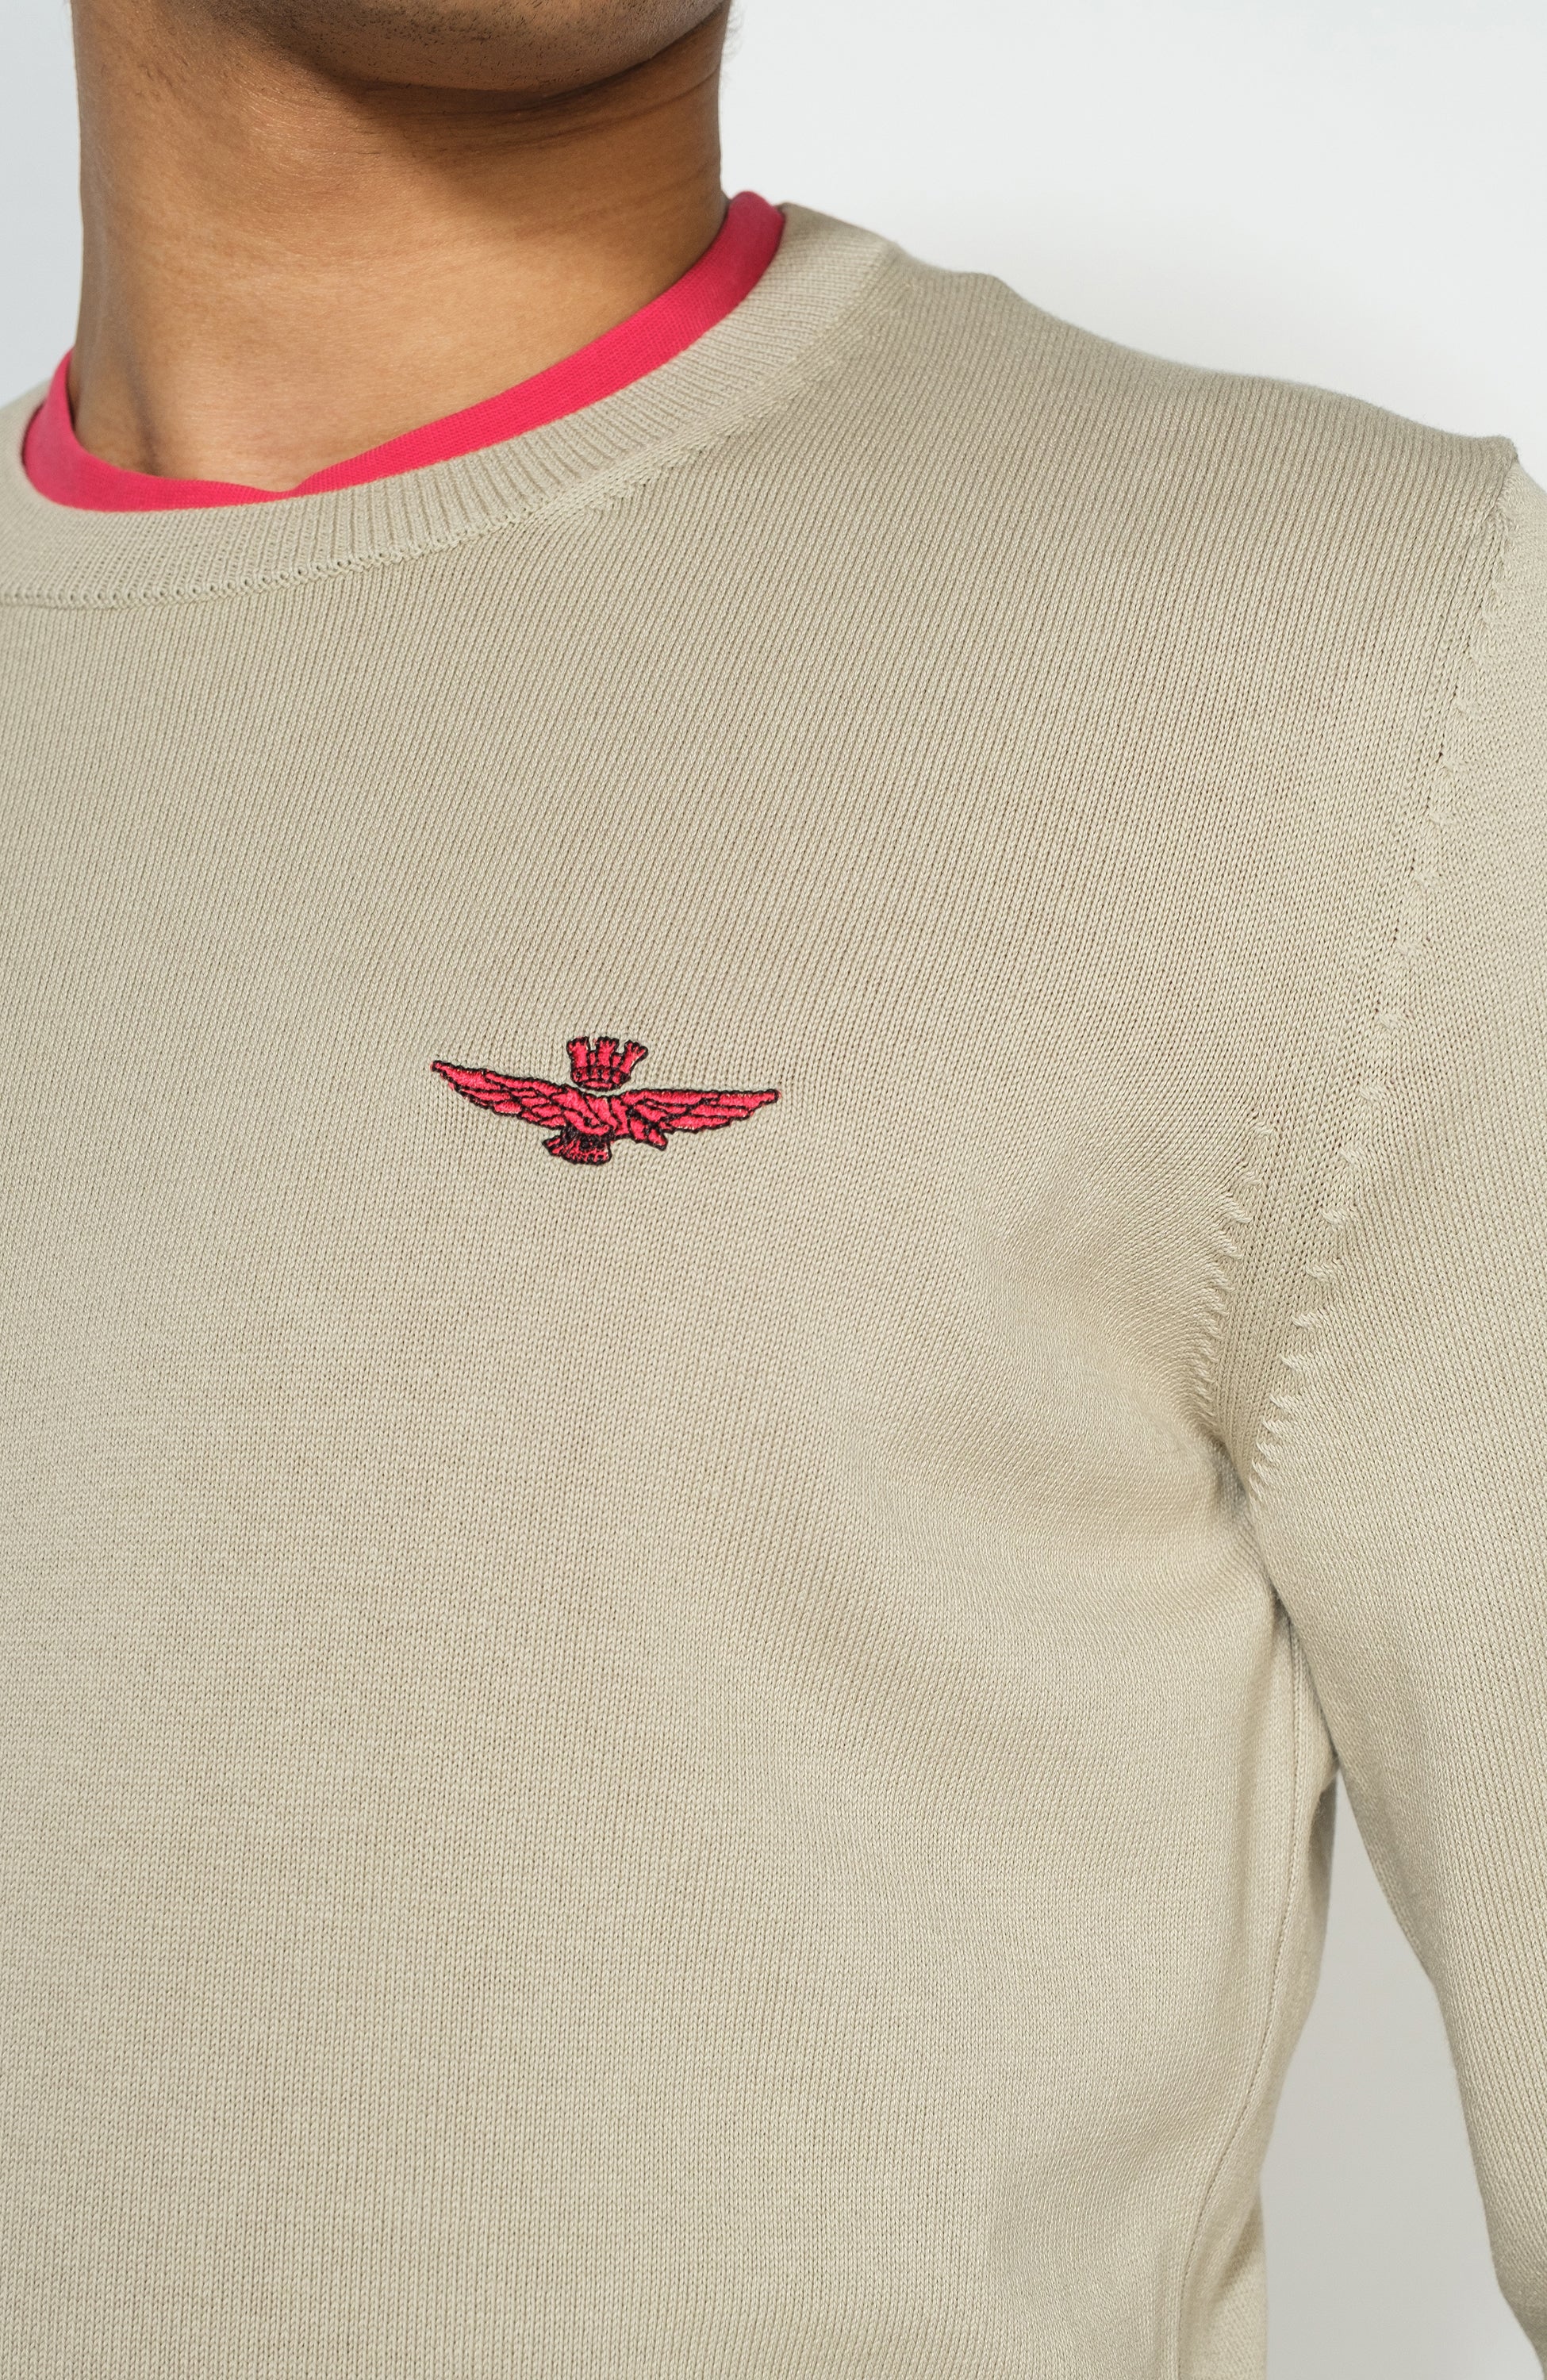 Eagle-patch crewneck sweater